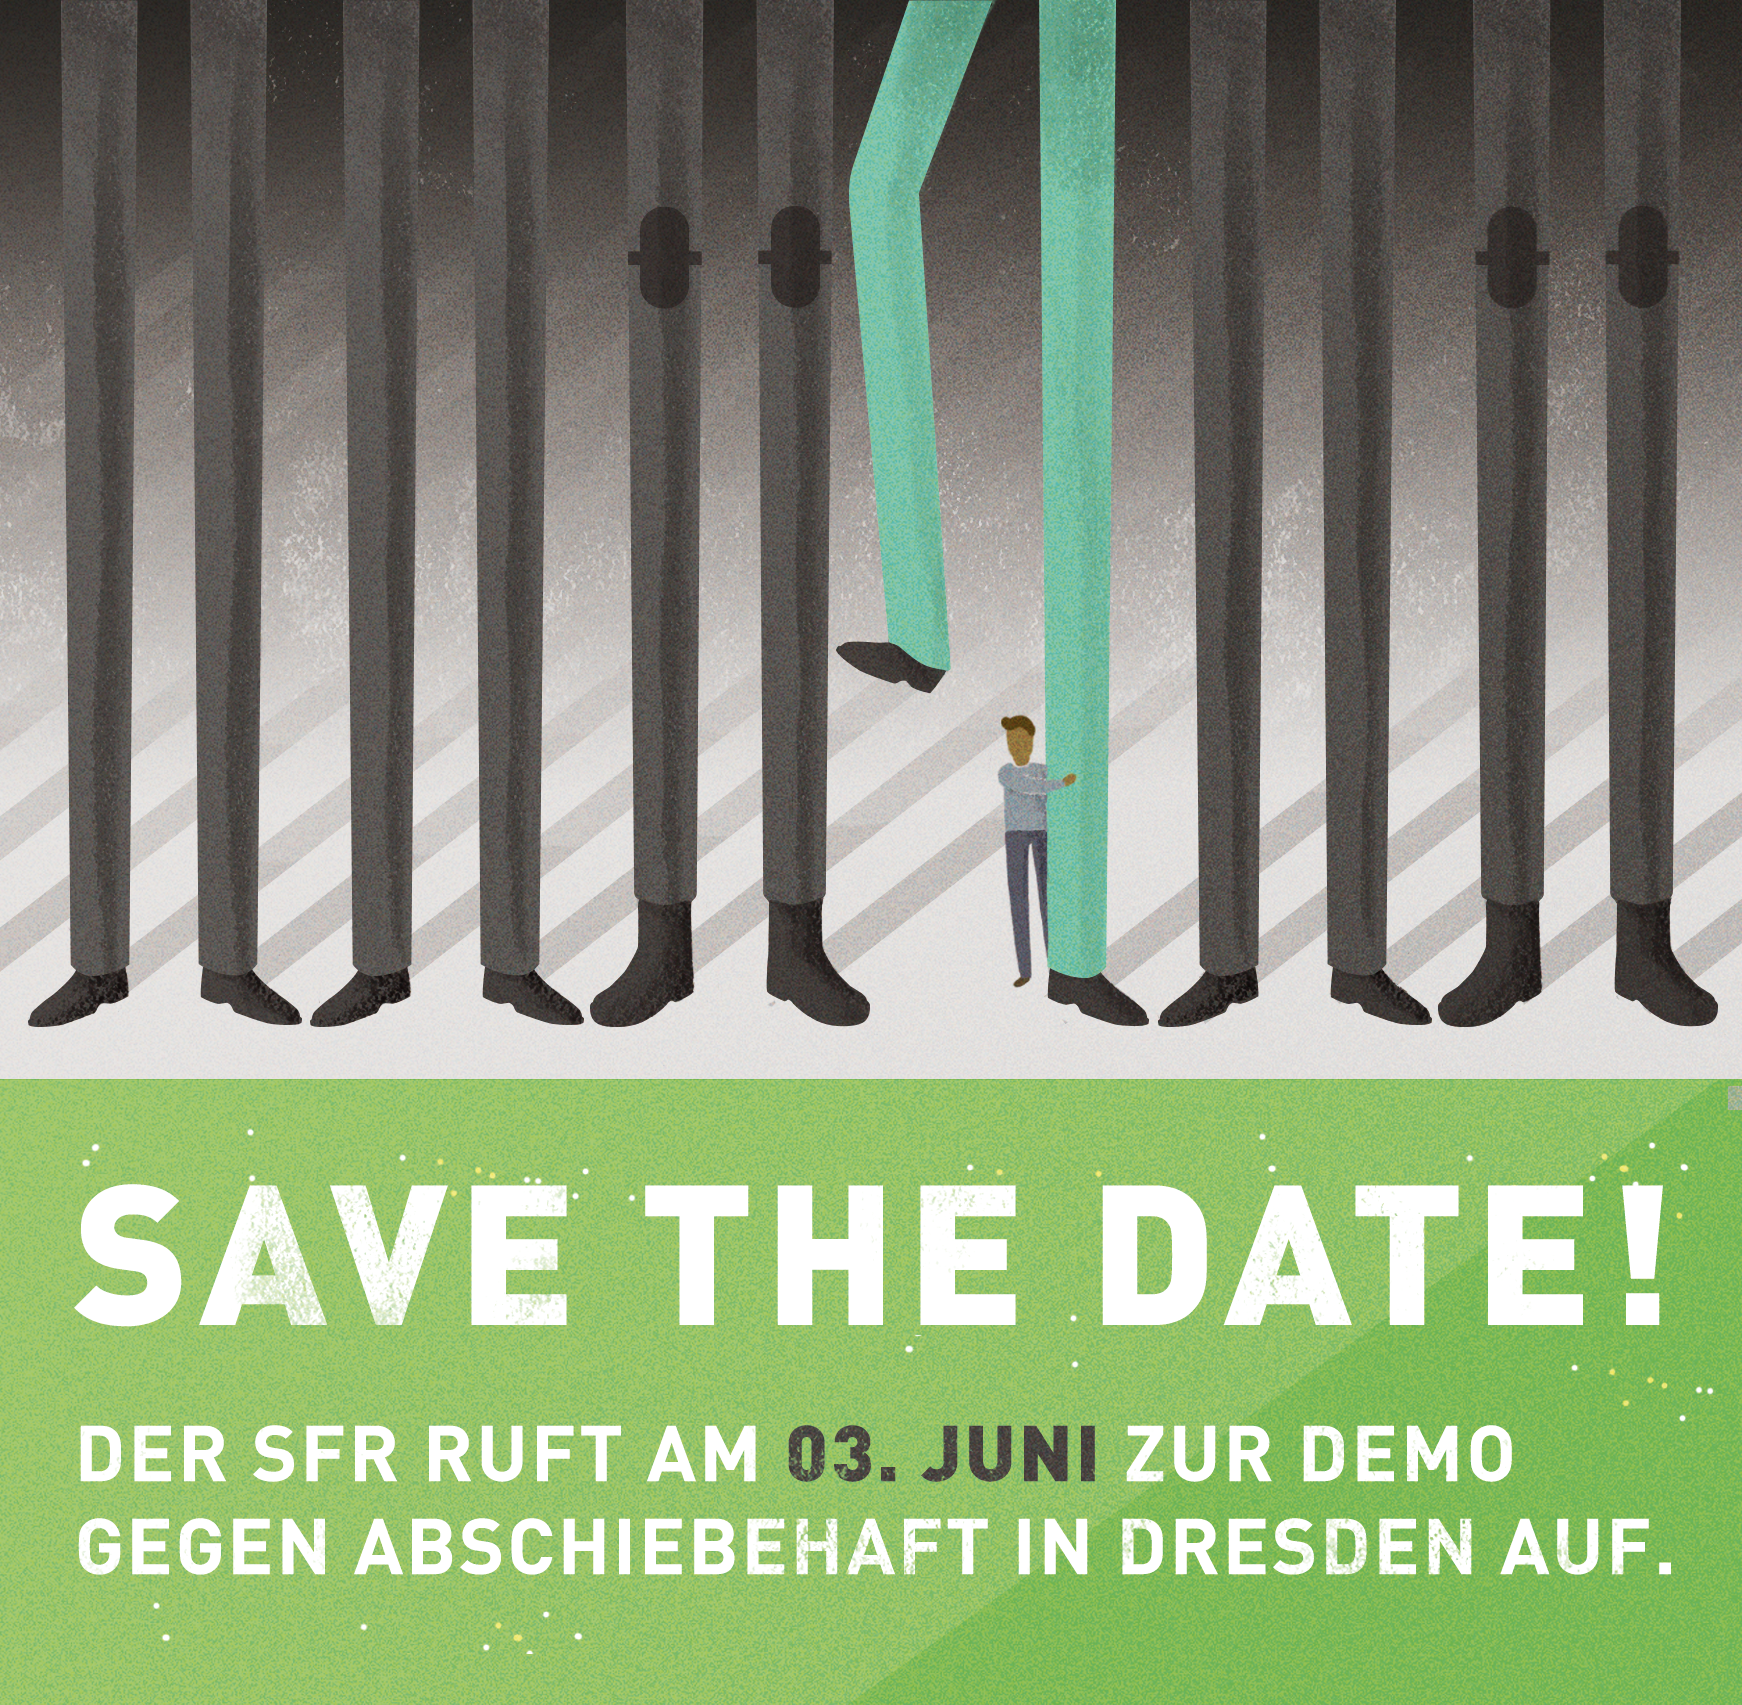 Save The Date! Wir rufen zur Demo gegen Abschiebehaft in Dresden auf.